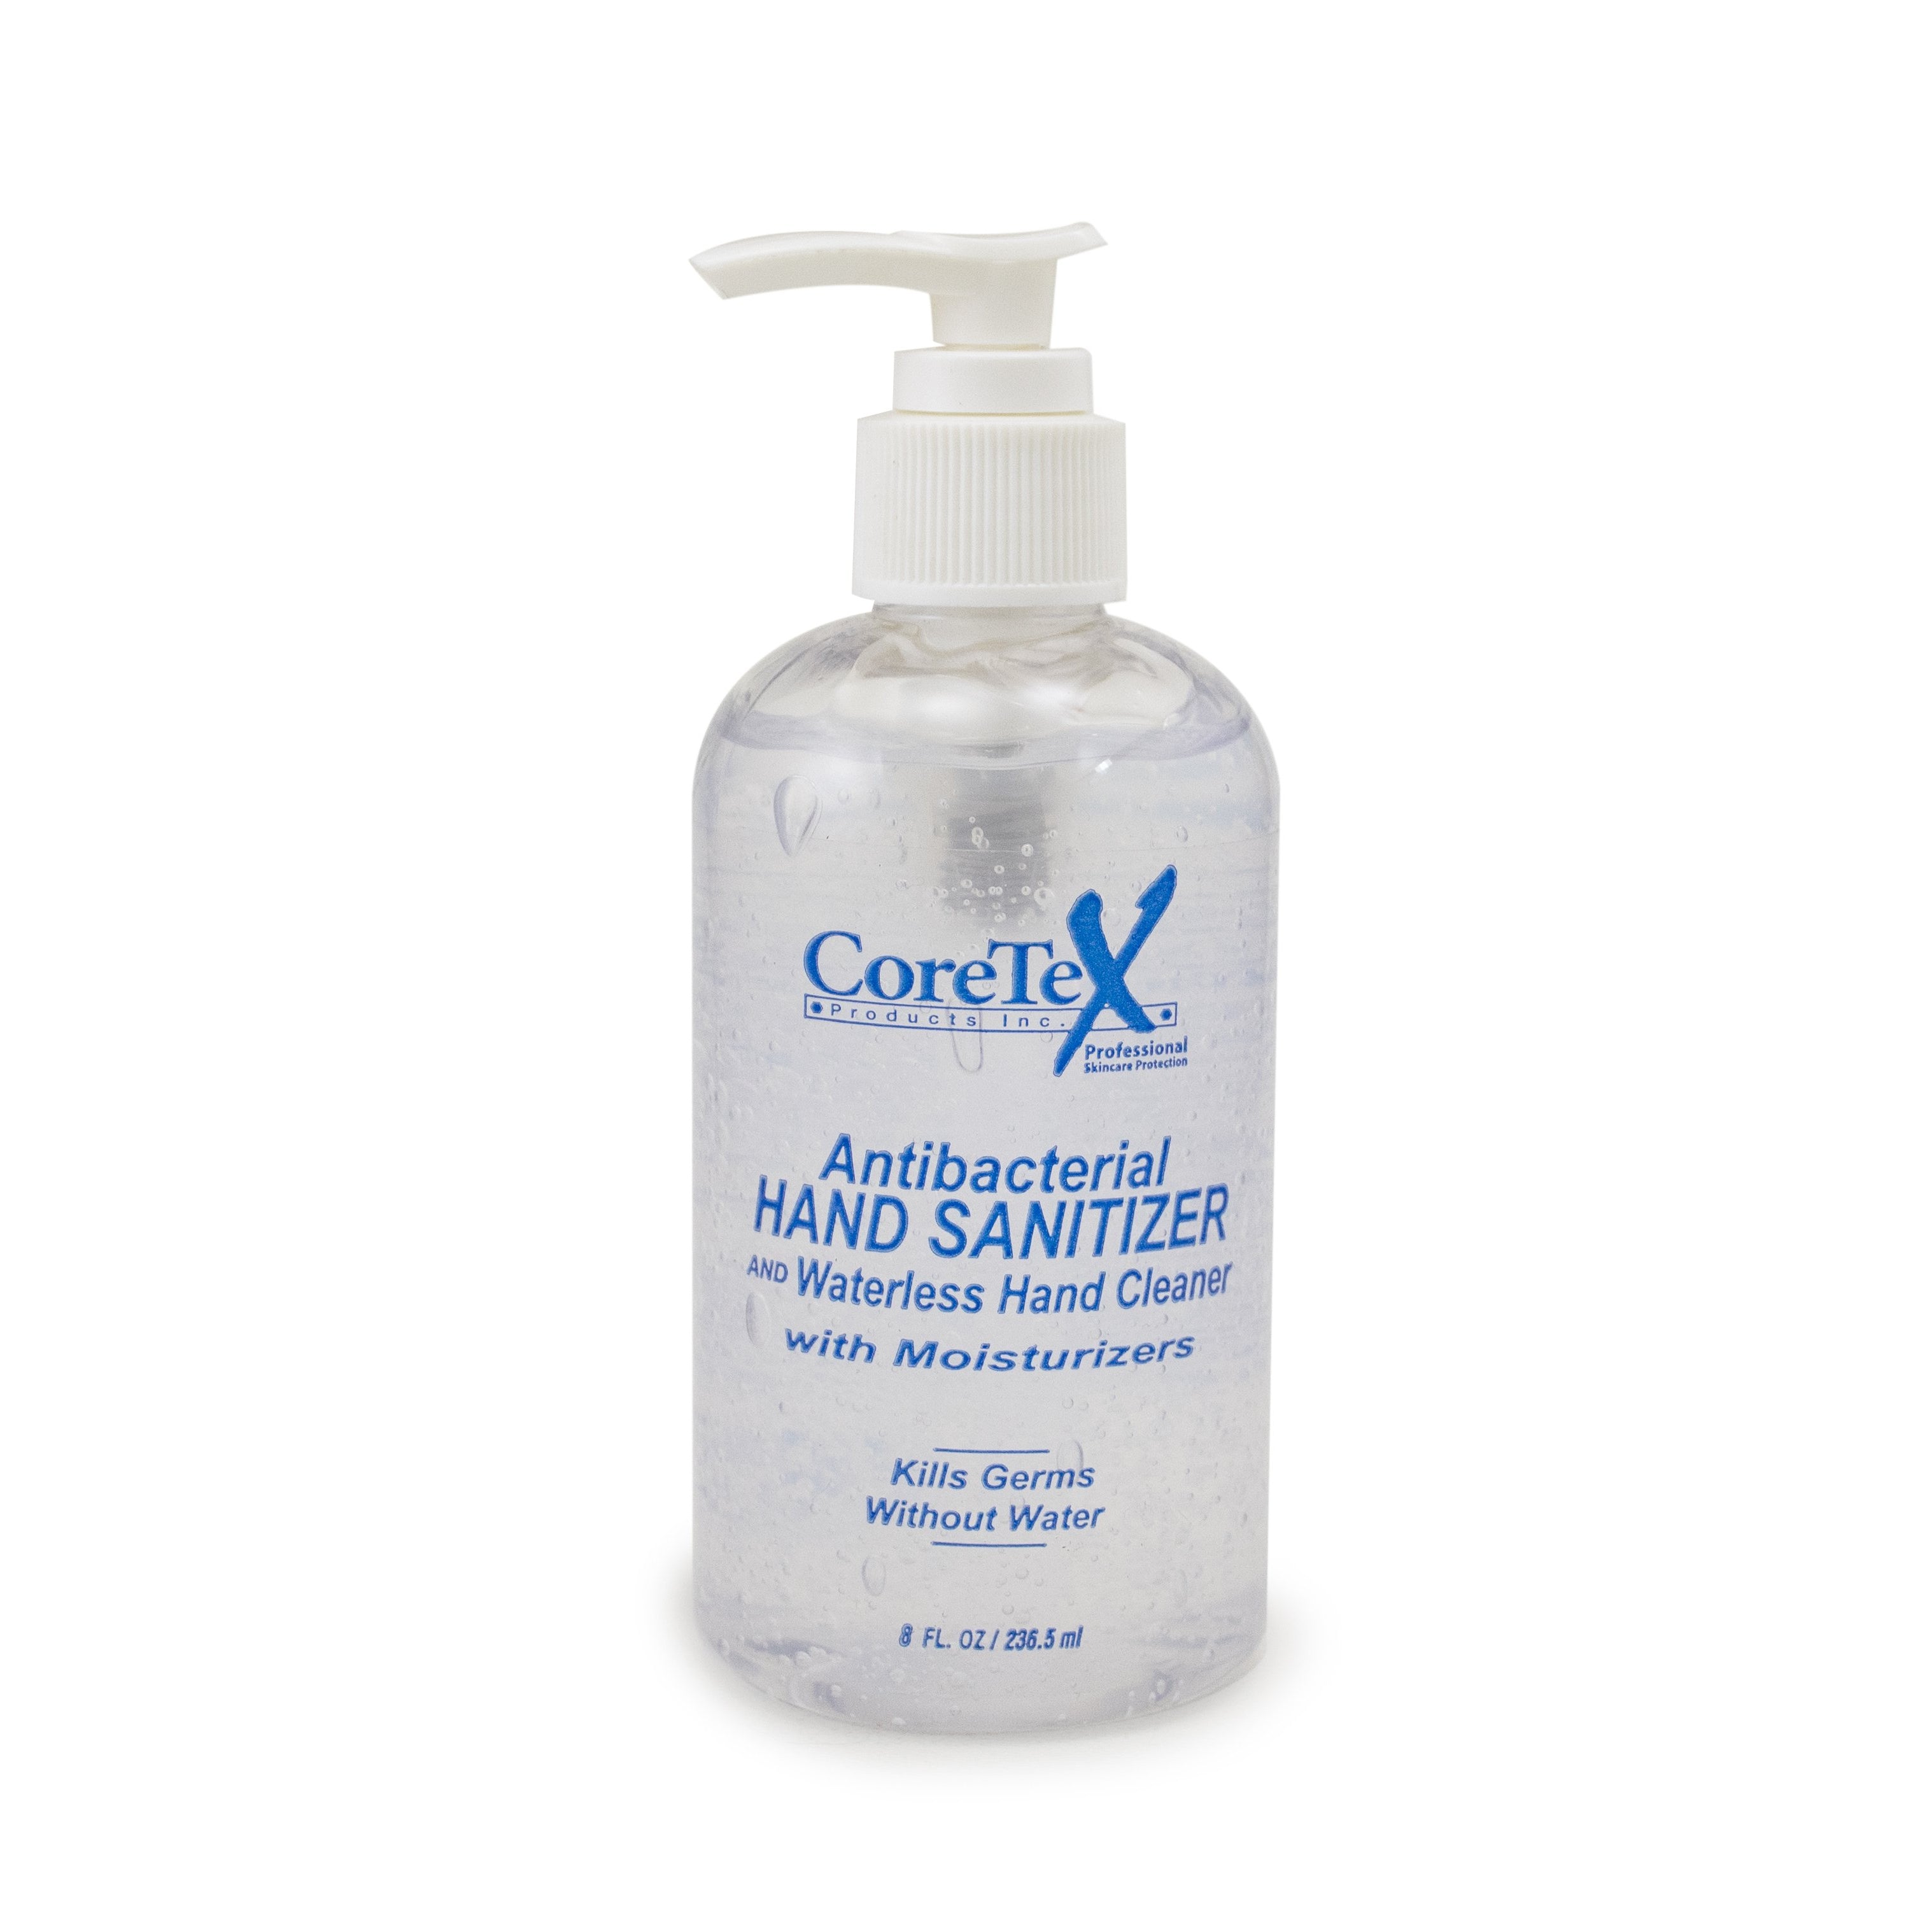 CoreTex Antibacterial Hand Sanitizer and Waterless Hand Cleaner